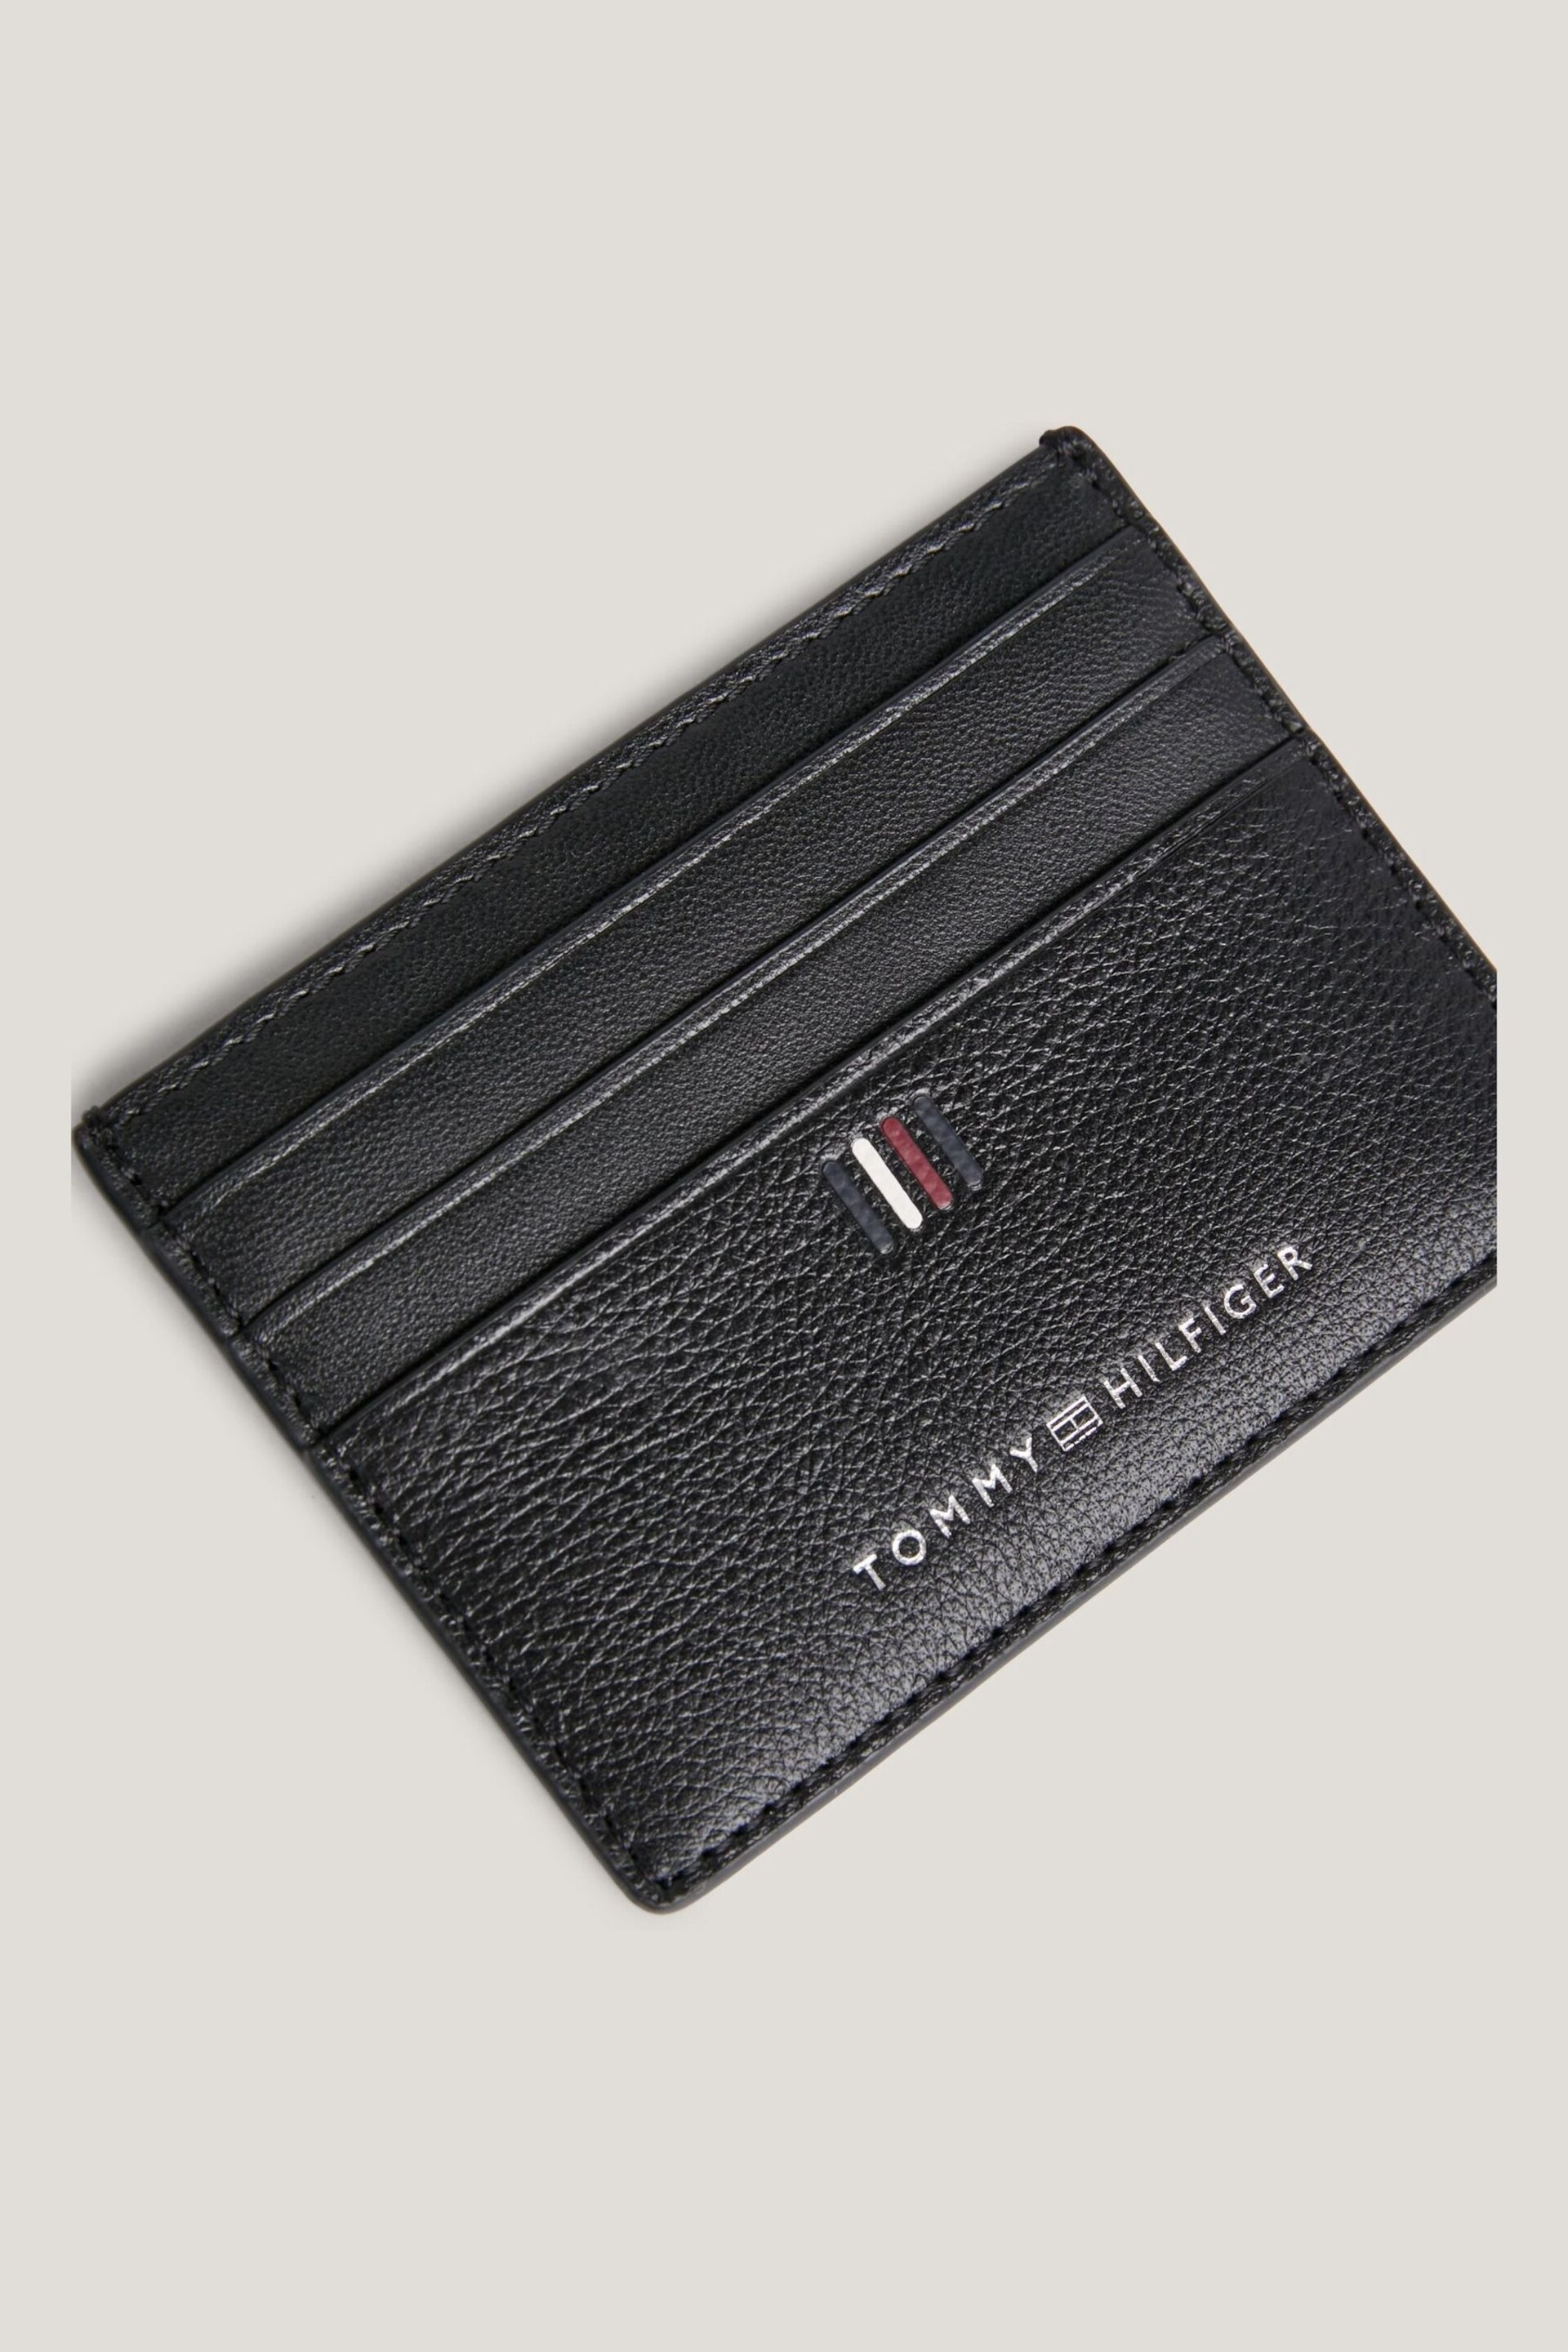 Tommy Hilfiger Central Black Card Holder - Image 3 of 4